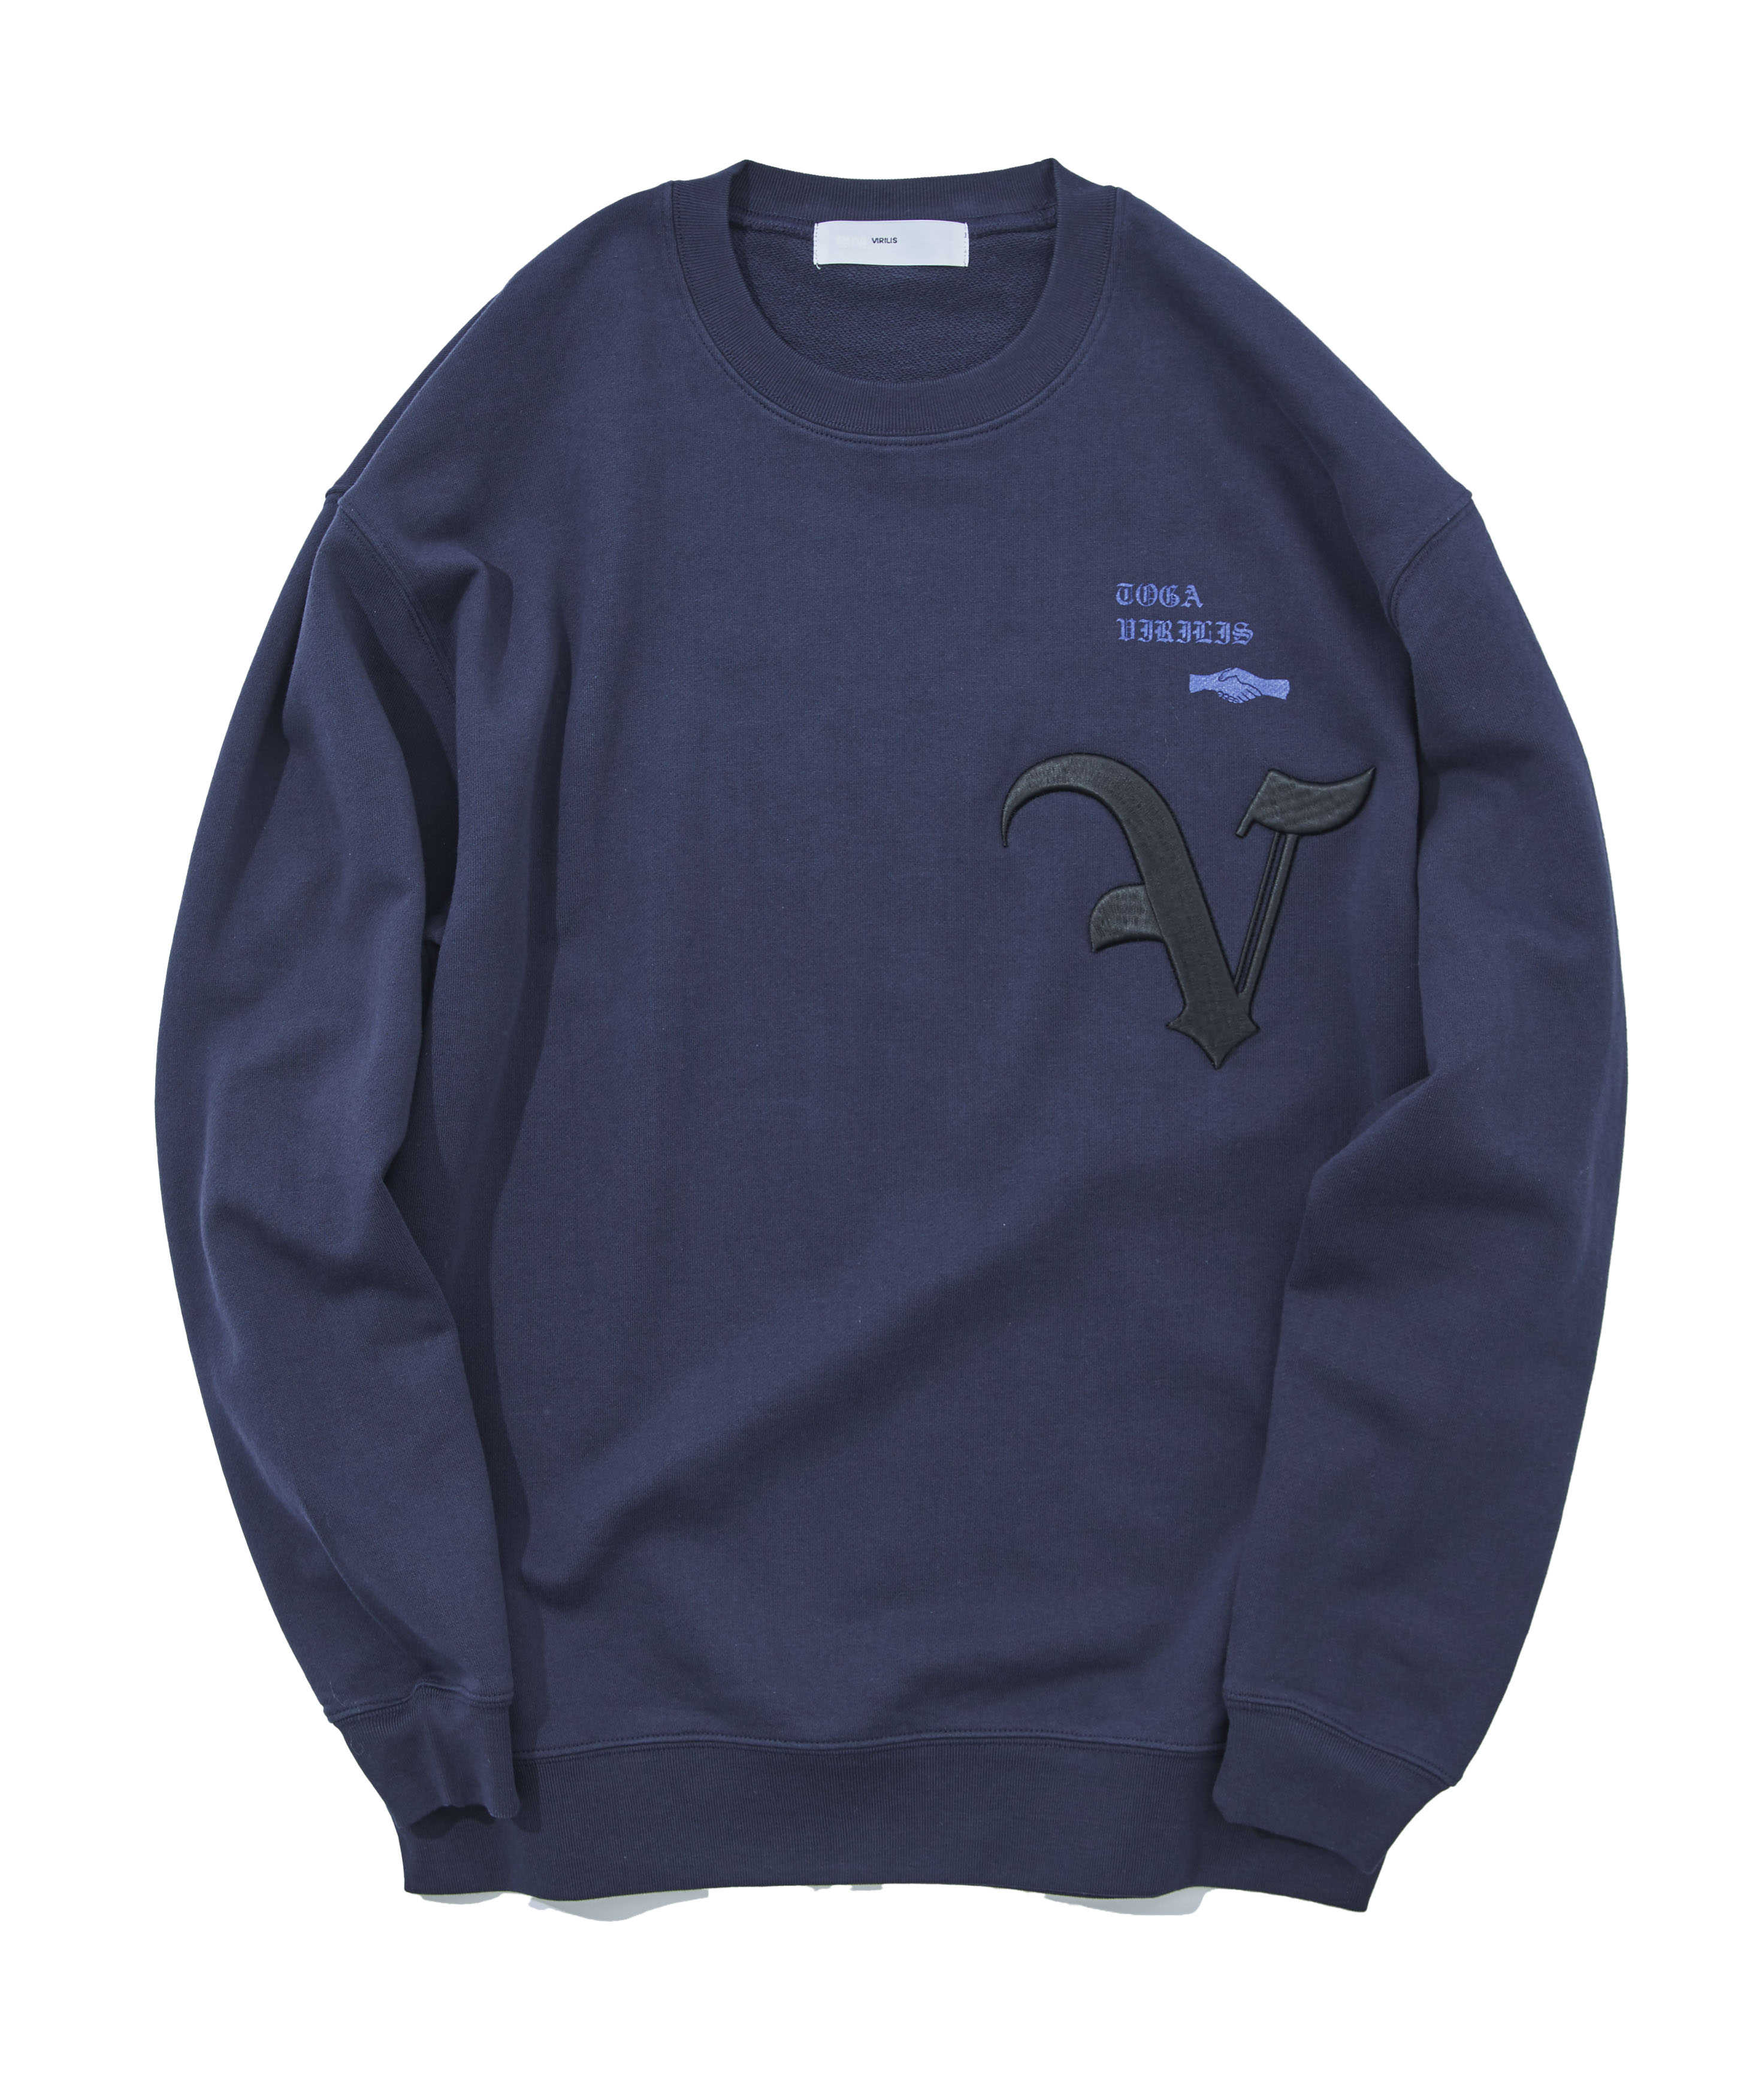 Embroidery sweatshirt